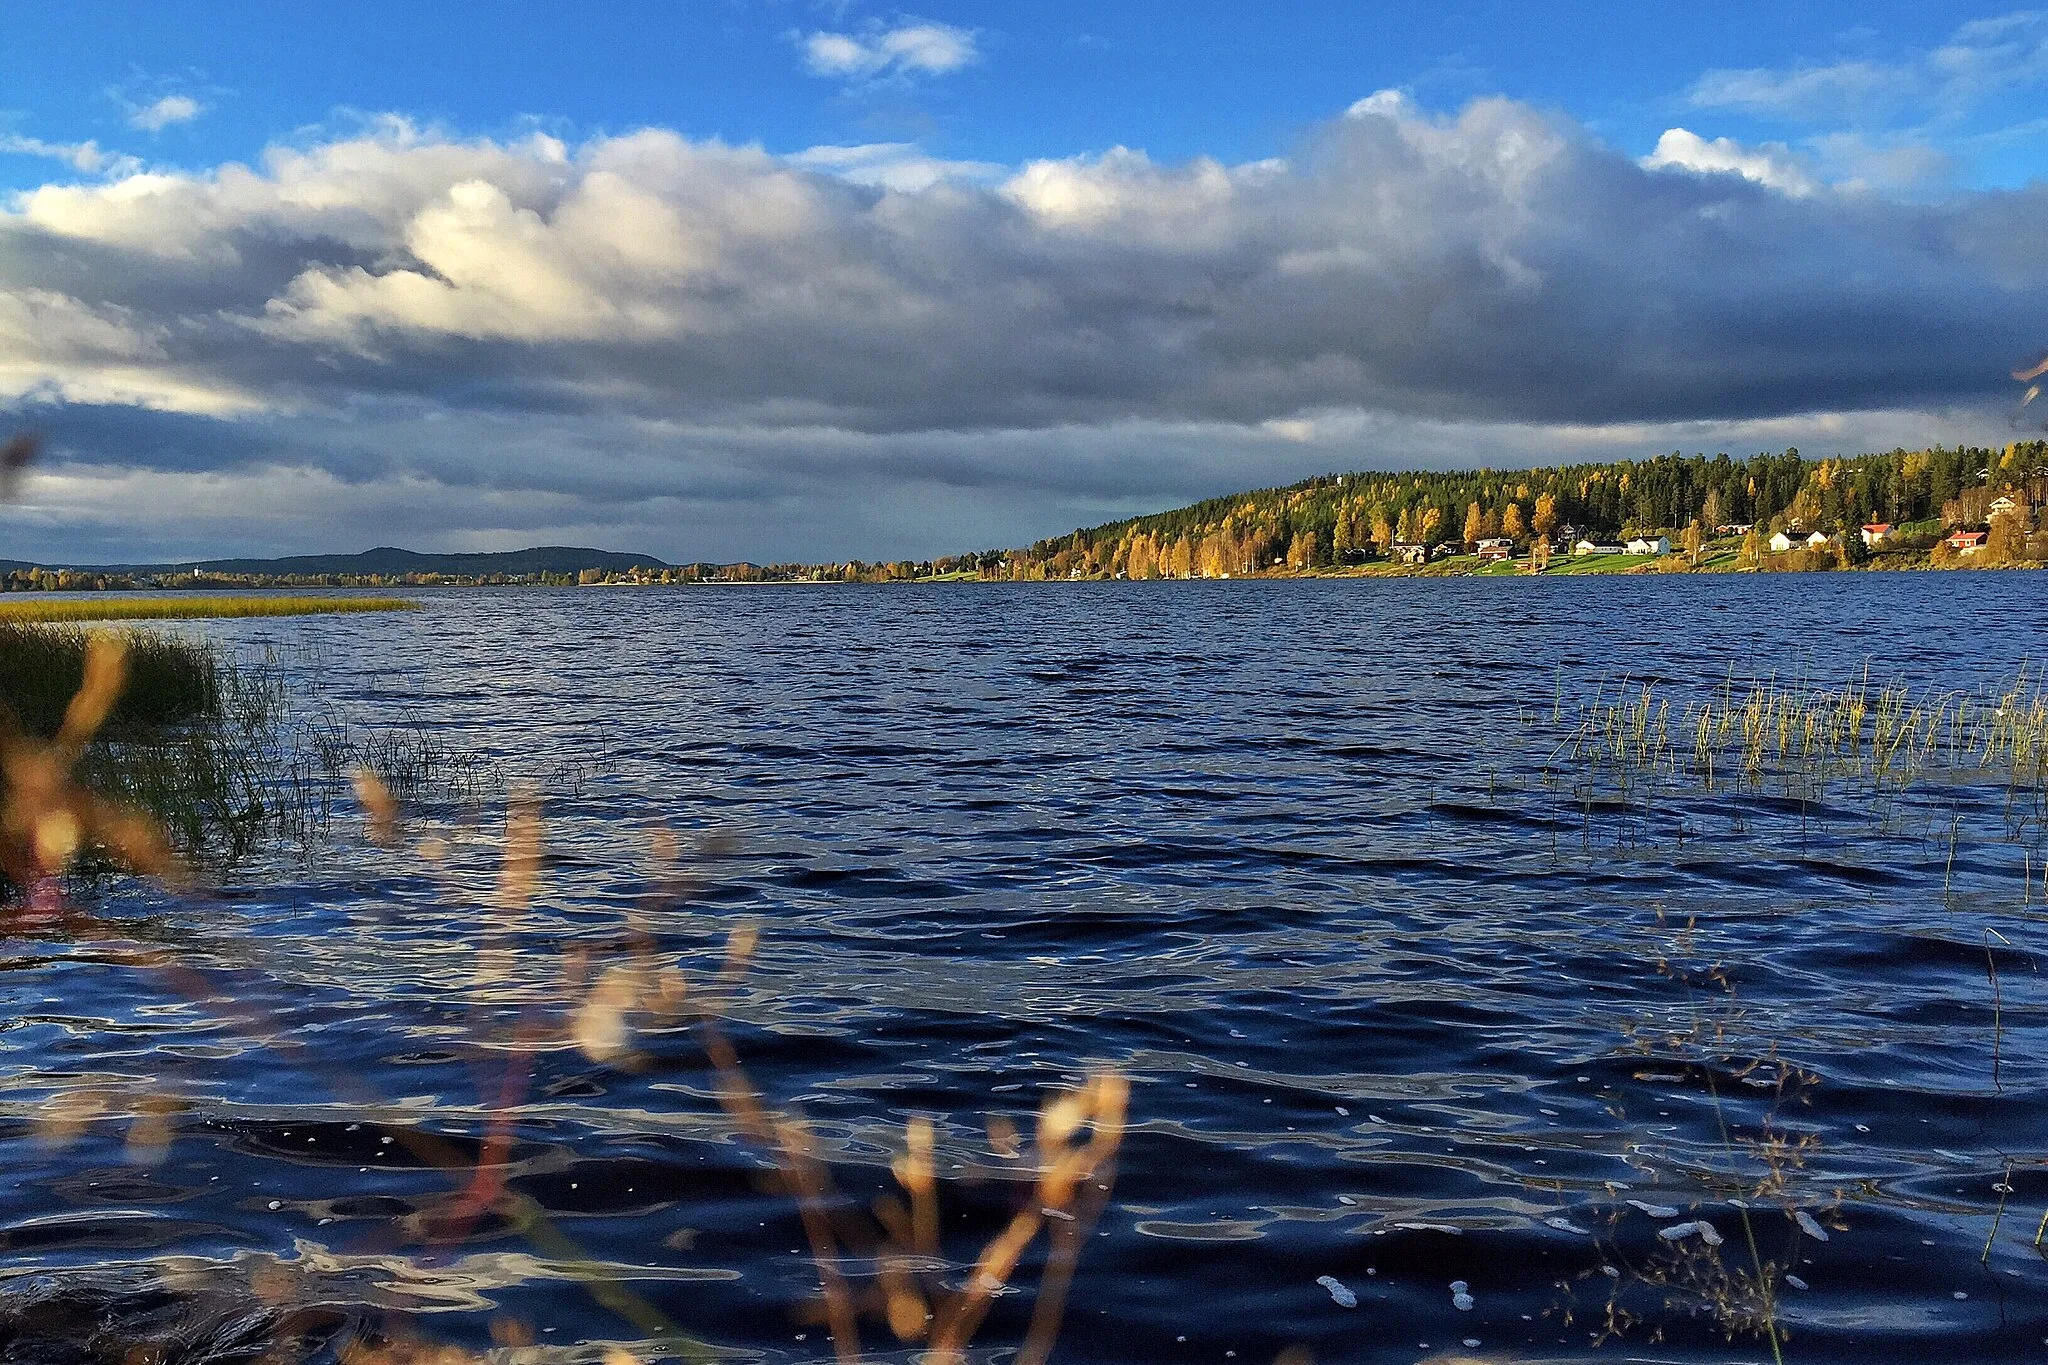 Photo showing: Svartbyträsket är en sjö i Bodens kommun i Norrbotten och ingår i Luleälvens huvudavrinningsområde. Sjön har en area på 1,37 kvadratkilometer och ligger 7 meter över havet.
Vy från strandkant i södra svartbyn.
Ute till vänster skymtas Överluleå kyrkas vita torn.

Rakt över sjön syns Svedjebergsfästet.